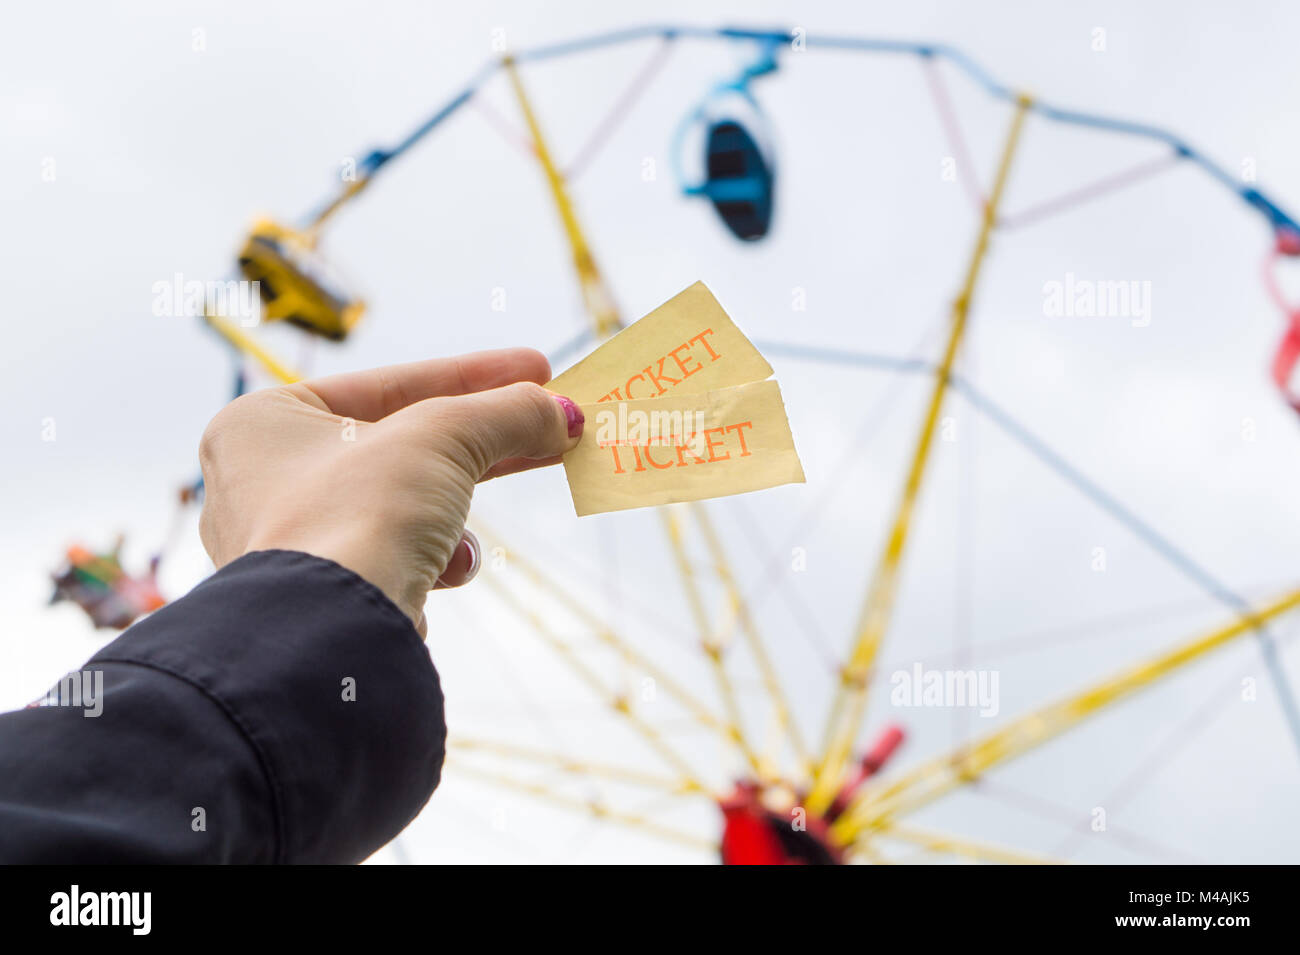 Ragazza o donna giovane azienda parco dei divertimenti di biglietti in mano. Colorato tema park ride in background. Foto Stock